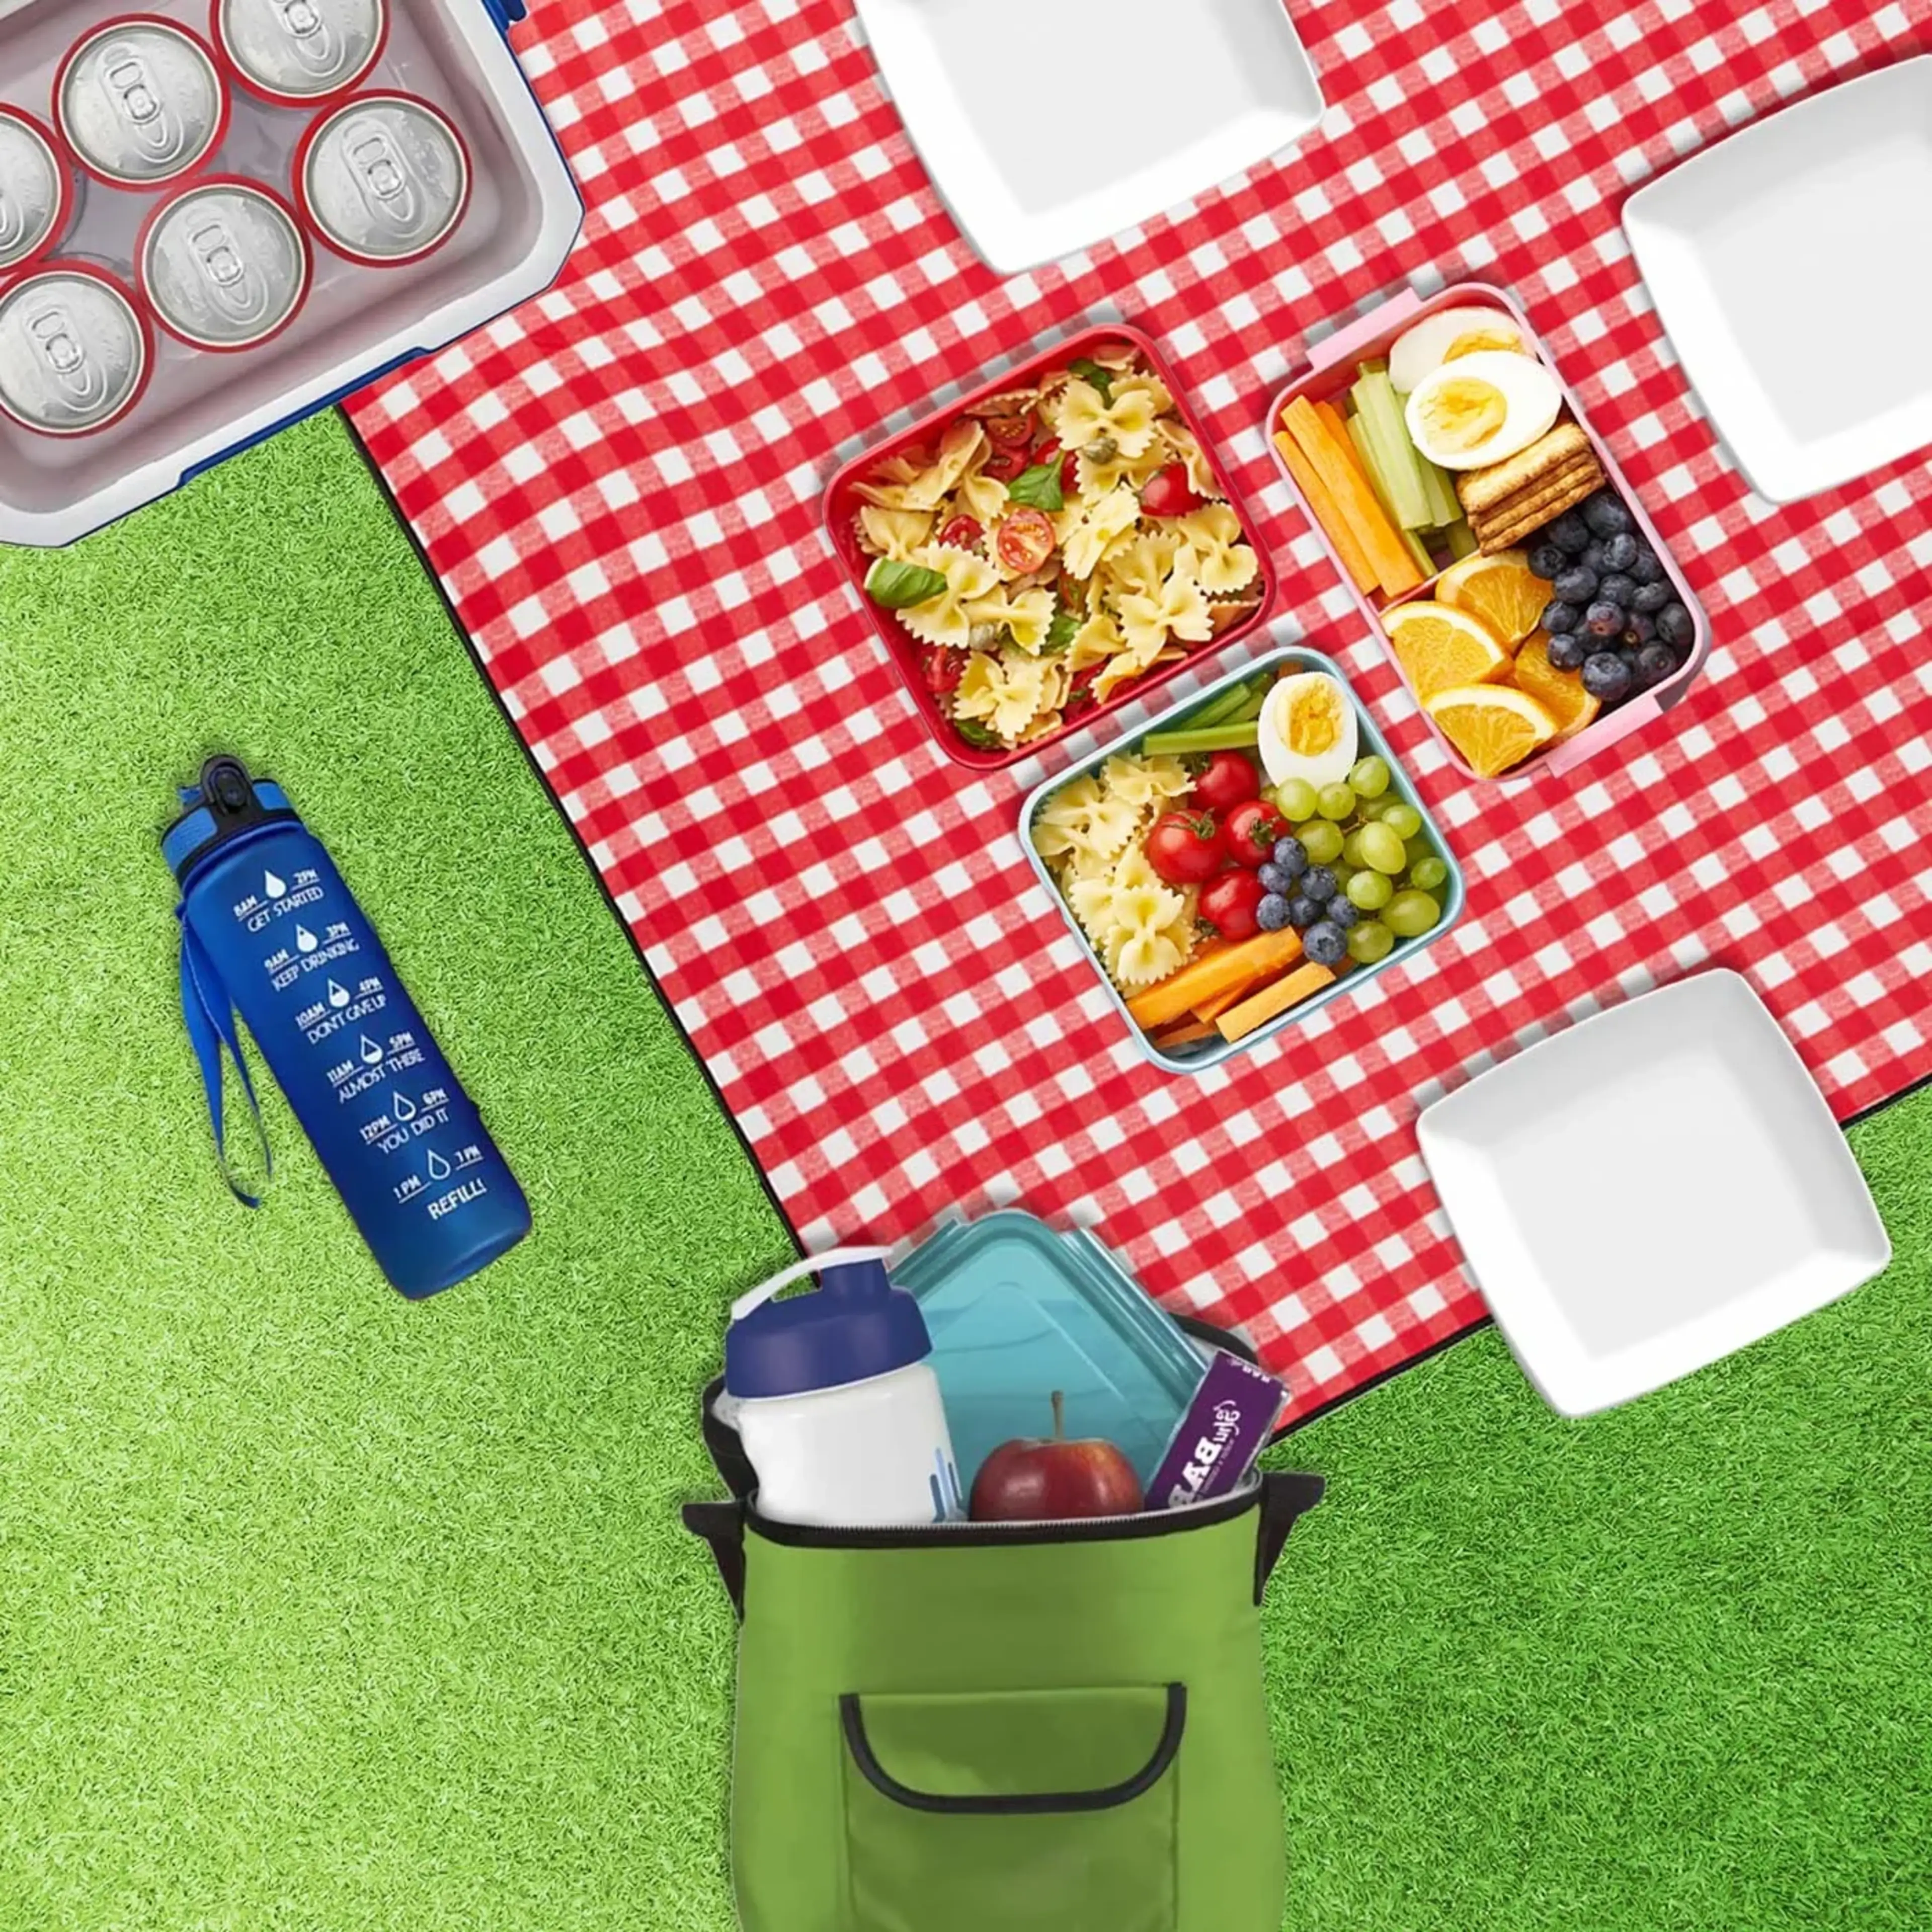 Picknick image